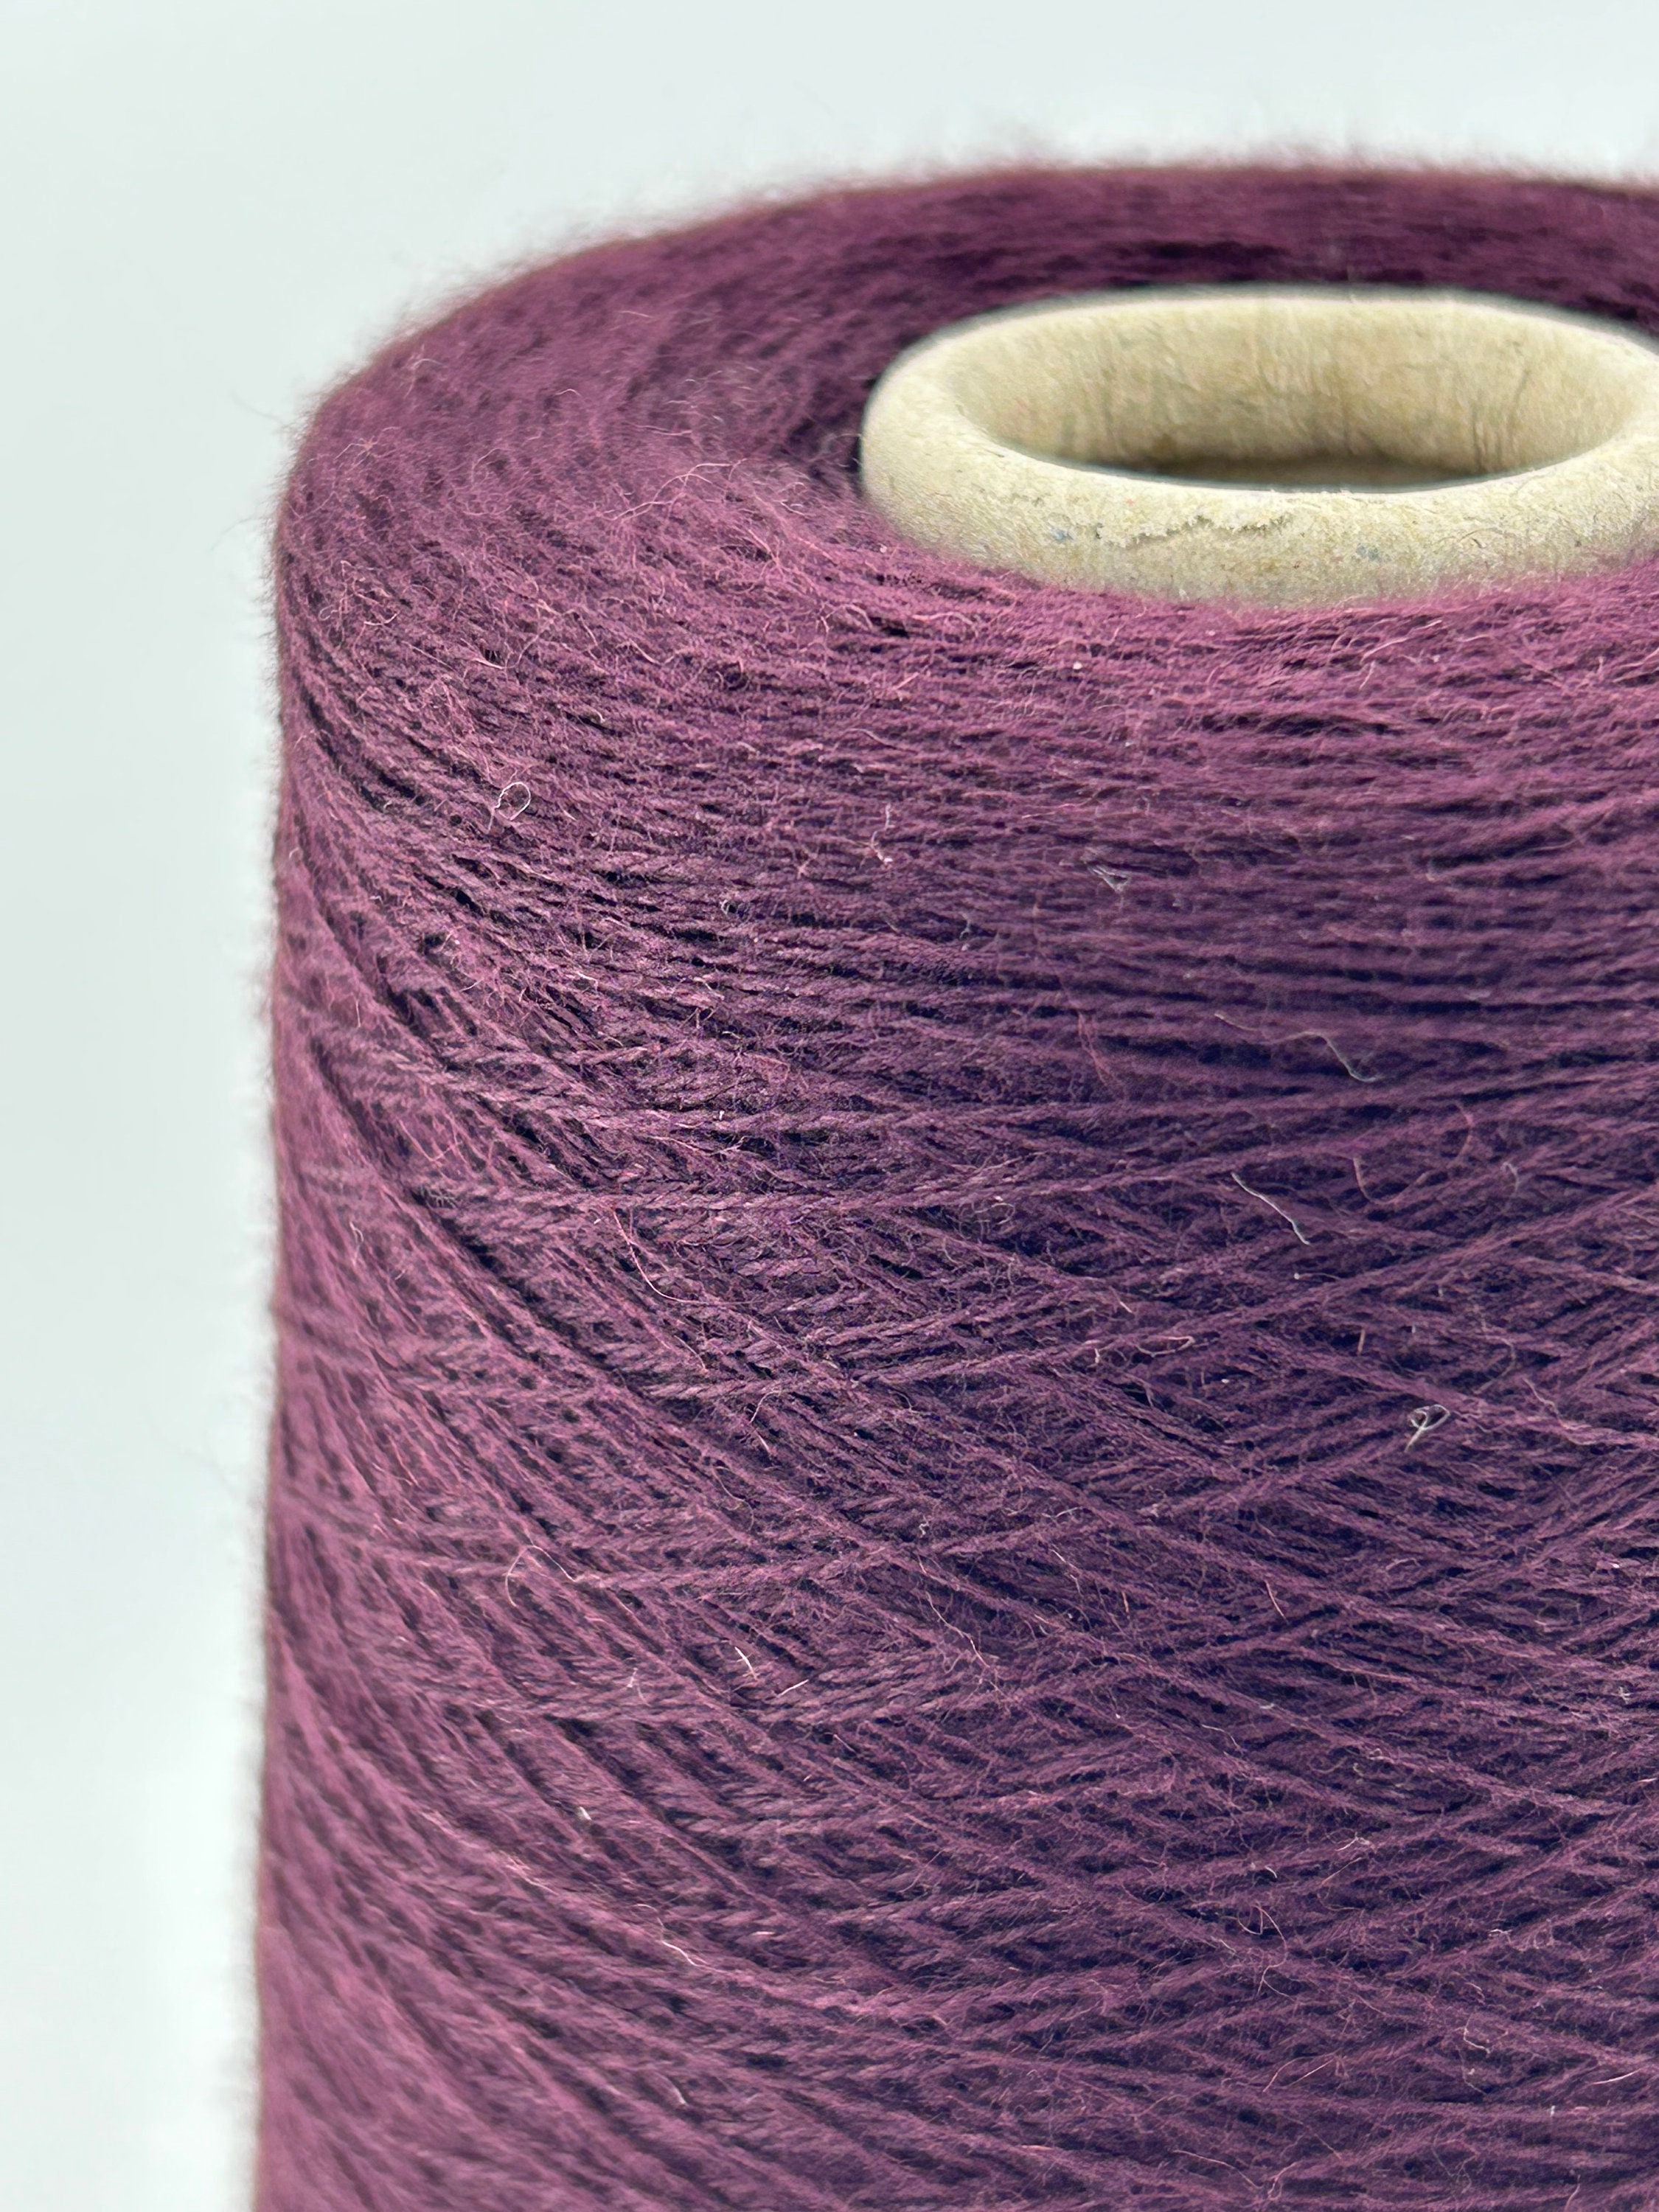 Logwood Natural Dye Kit for 0.45lb Fabric, Violet Purple Color, Natural Dye,  Fabric Dye, Tie Dye, Mordant, Diy, Plant, Batic, Botanical, 09 